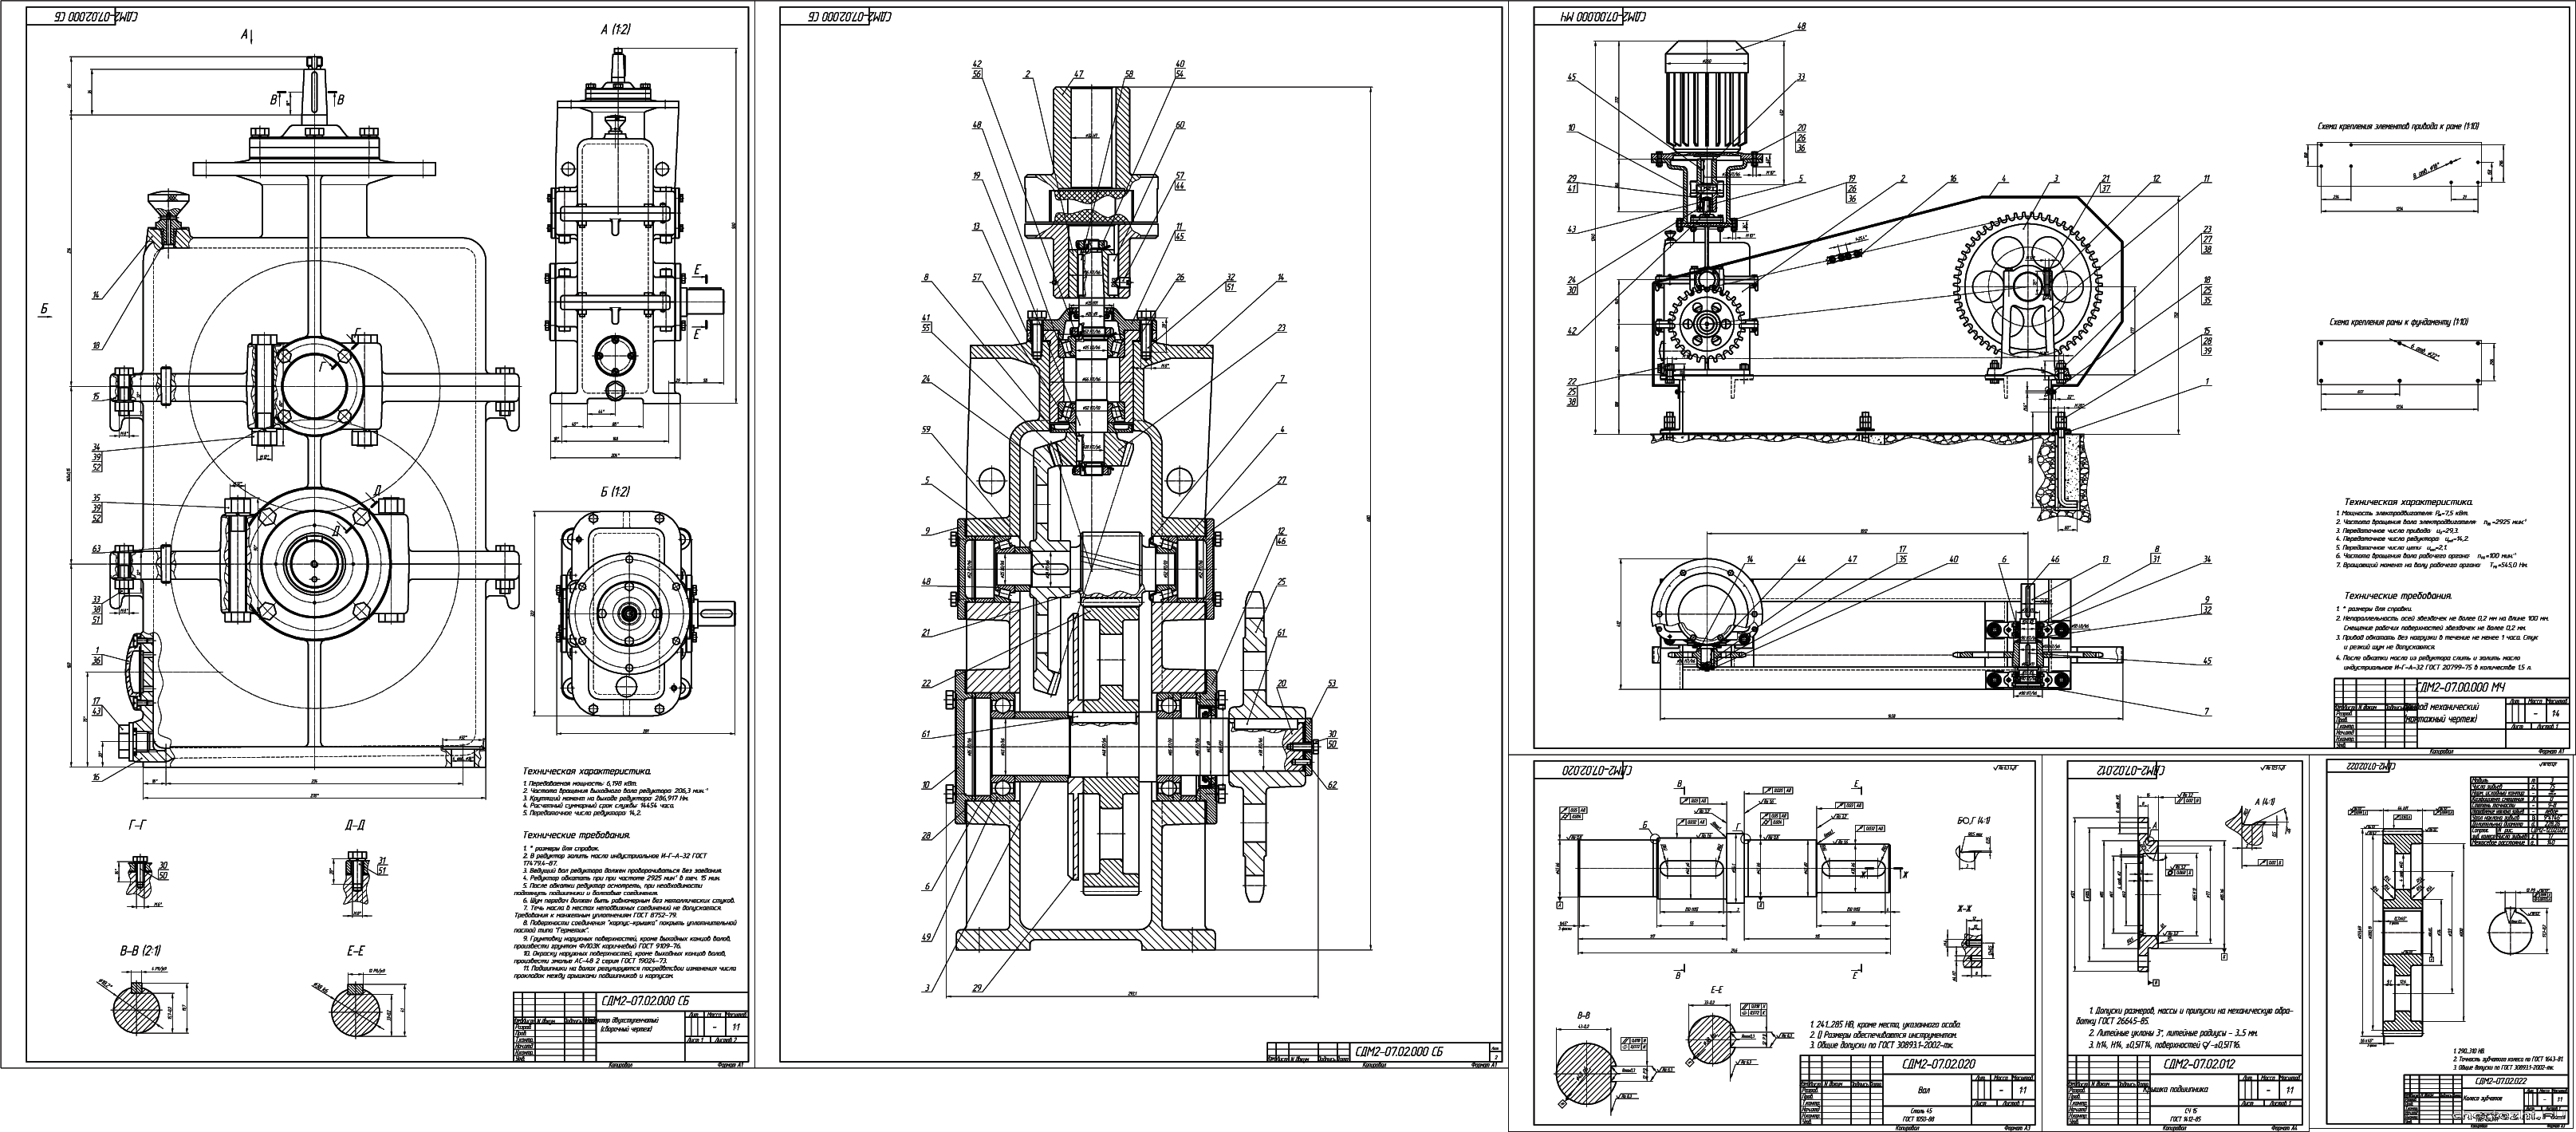 Курсовой проект - Привод механический (редуктор двухступенчатый коническо-цилиндрический вертикальный)